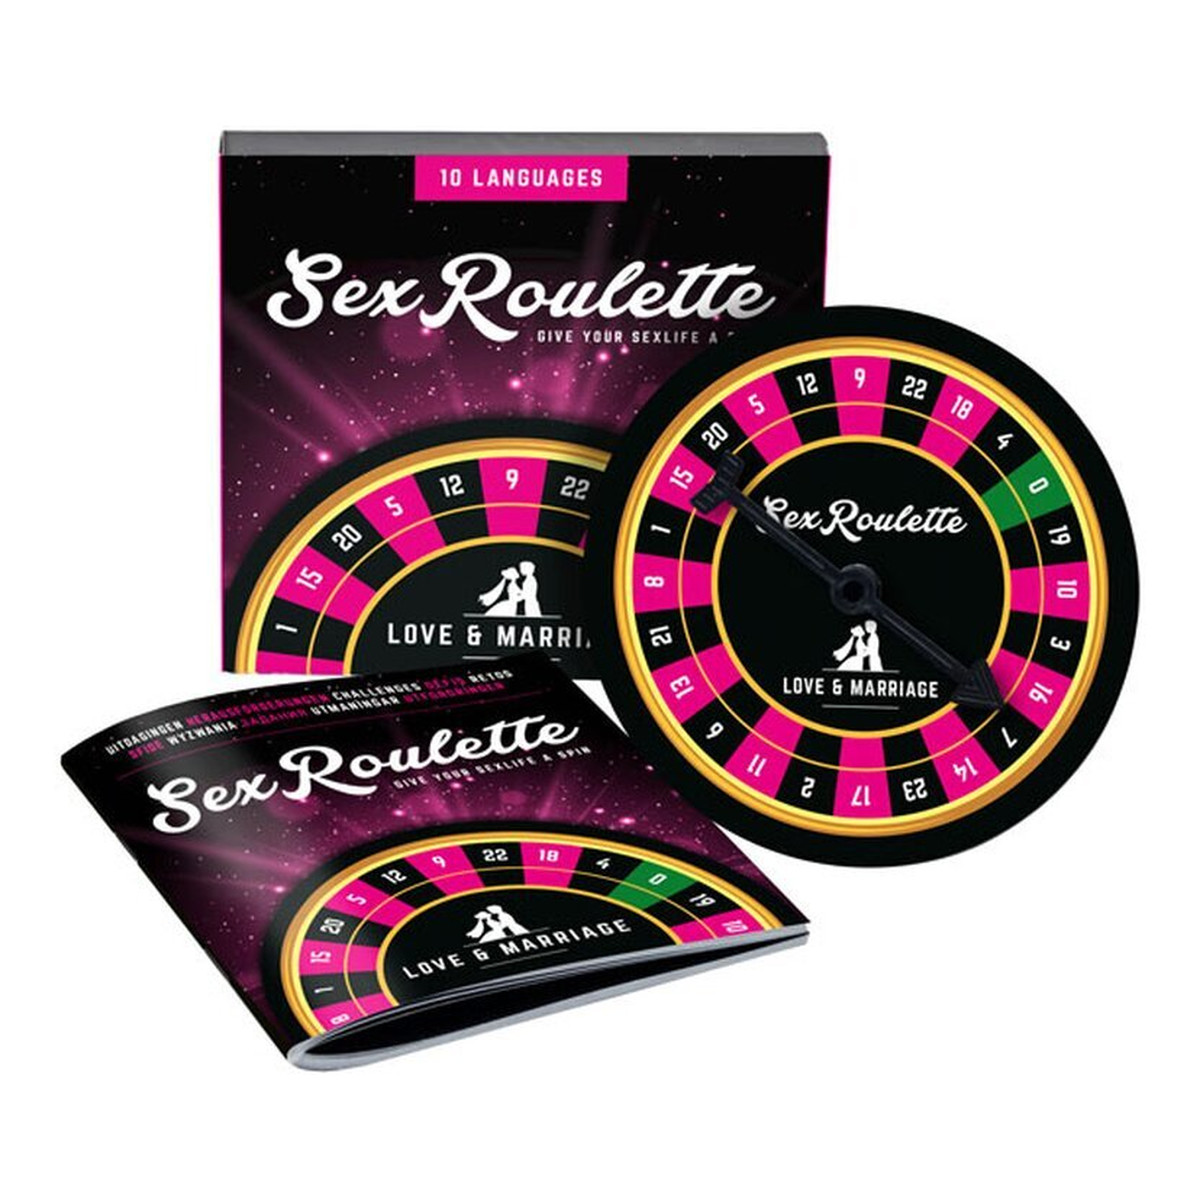 Tease & Please Sex roulette love & marriage wielojęzyczna gra erotyczna